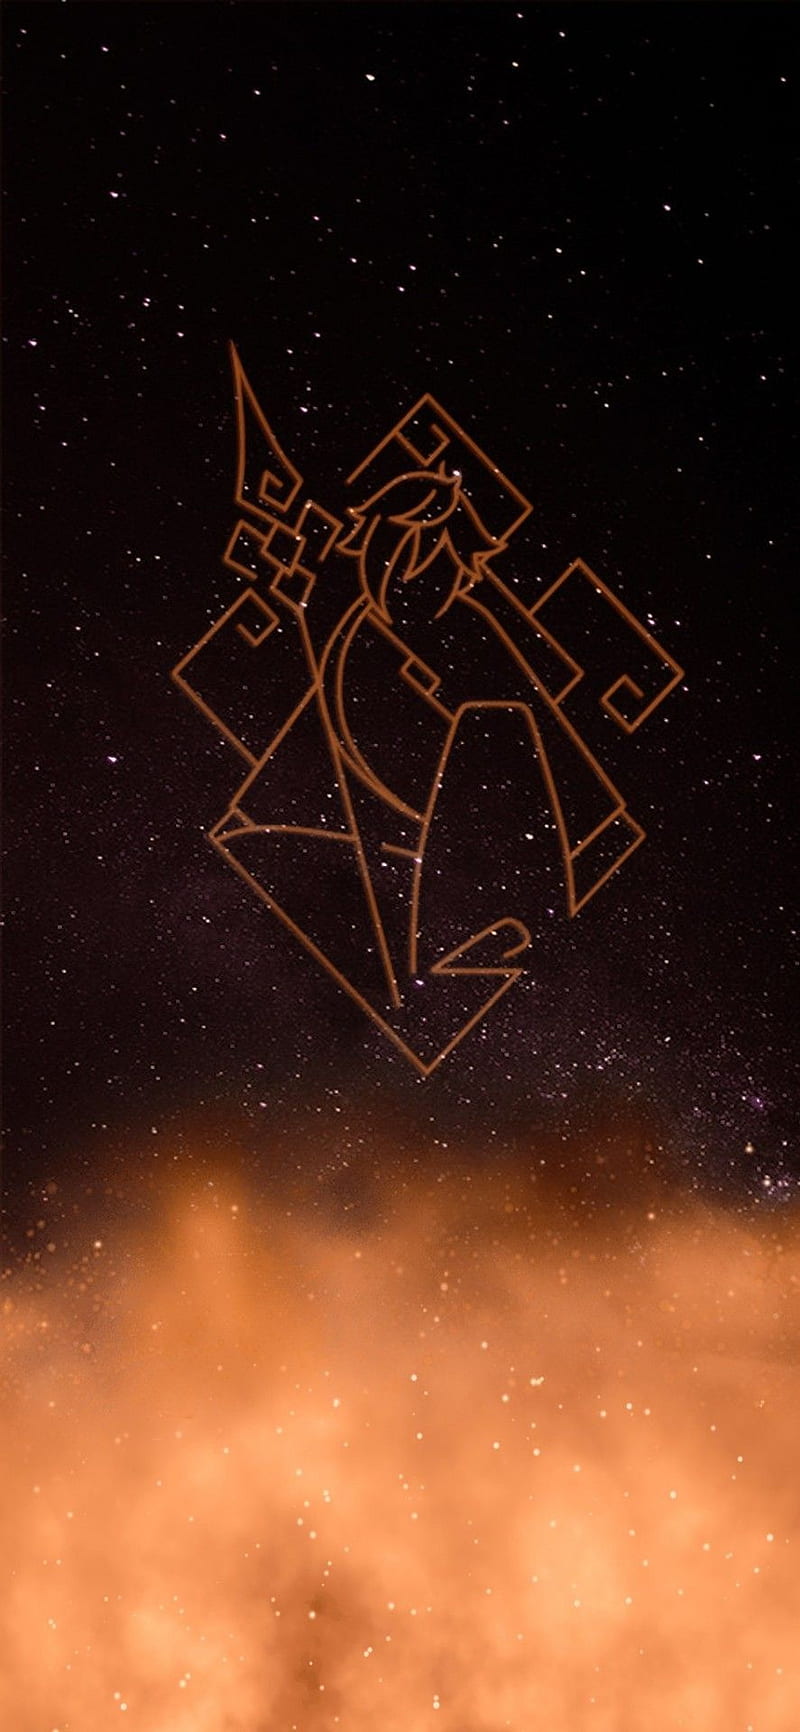 Hu tao constellation